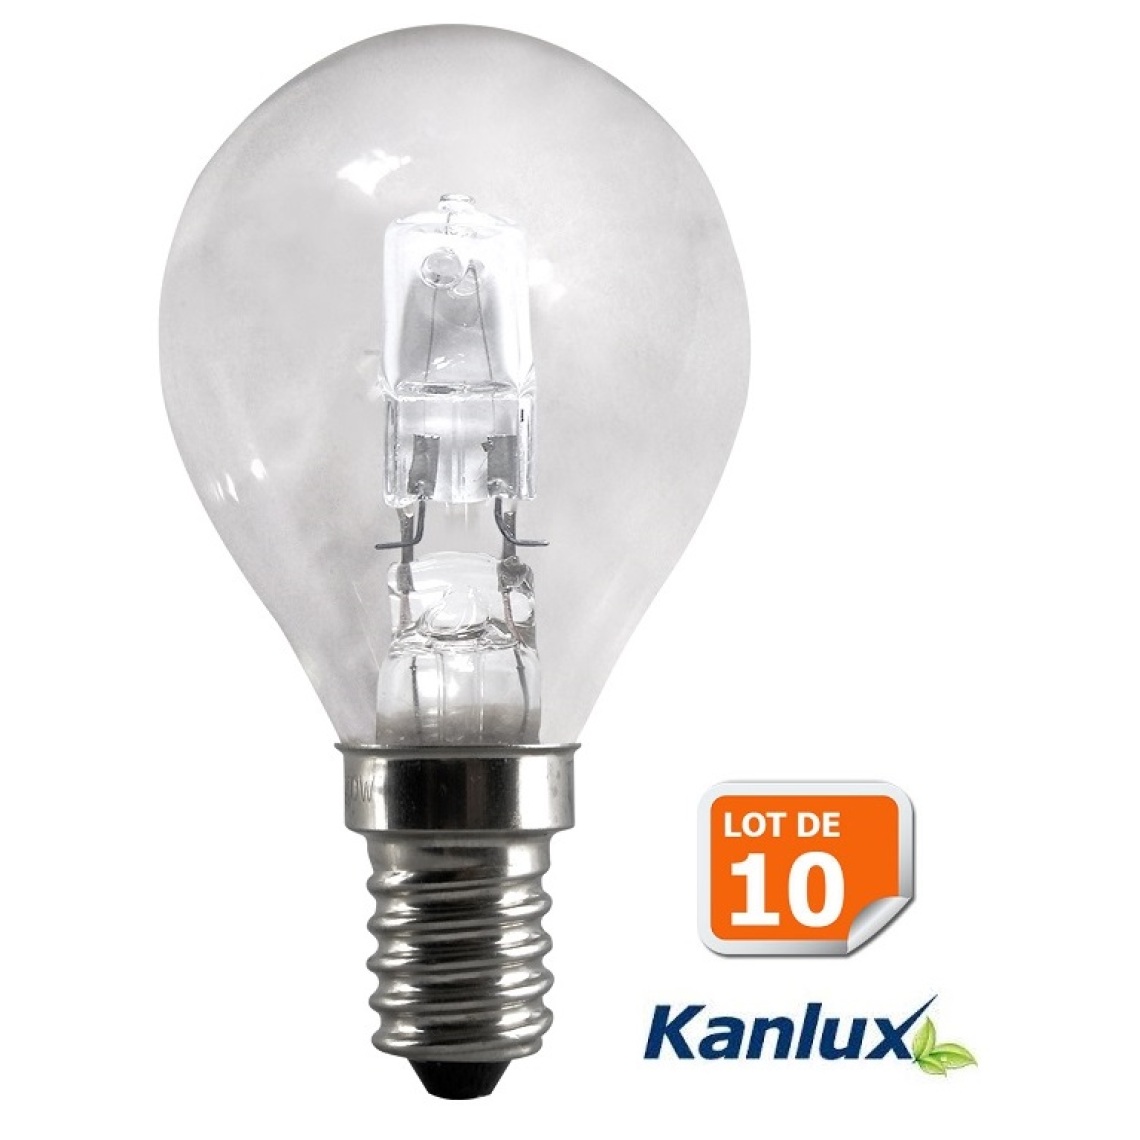 Kanlux - Lot de 10 Ampoules halogene sphérique 37W (28W) petite culot à vis e14 de Kanlux - Ampoules LED